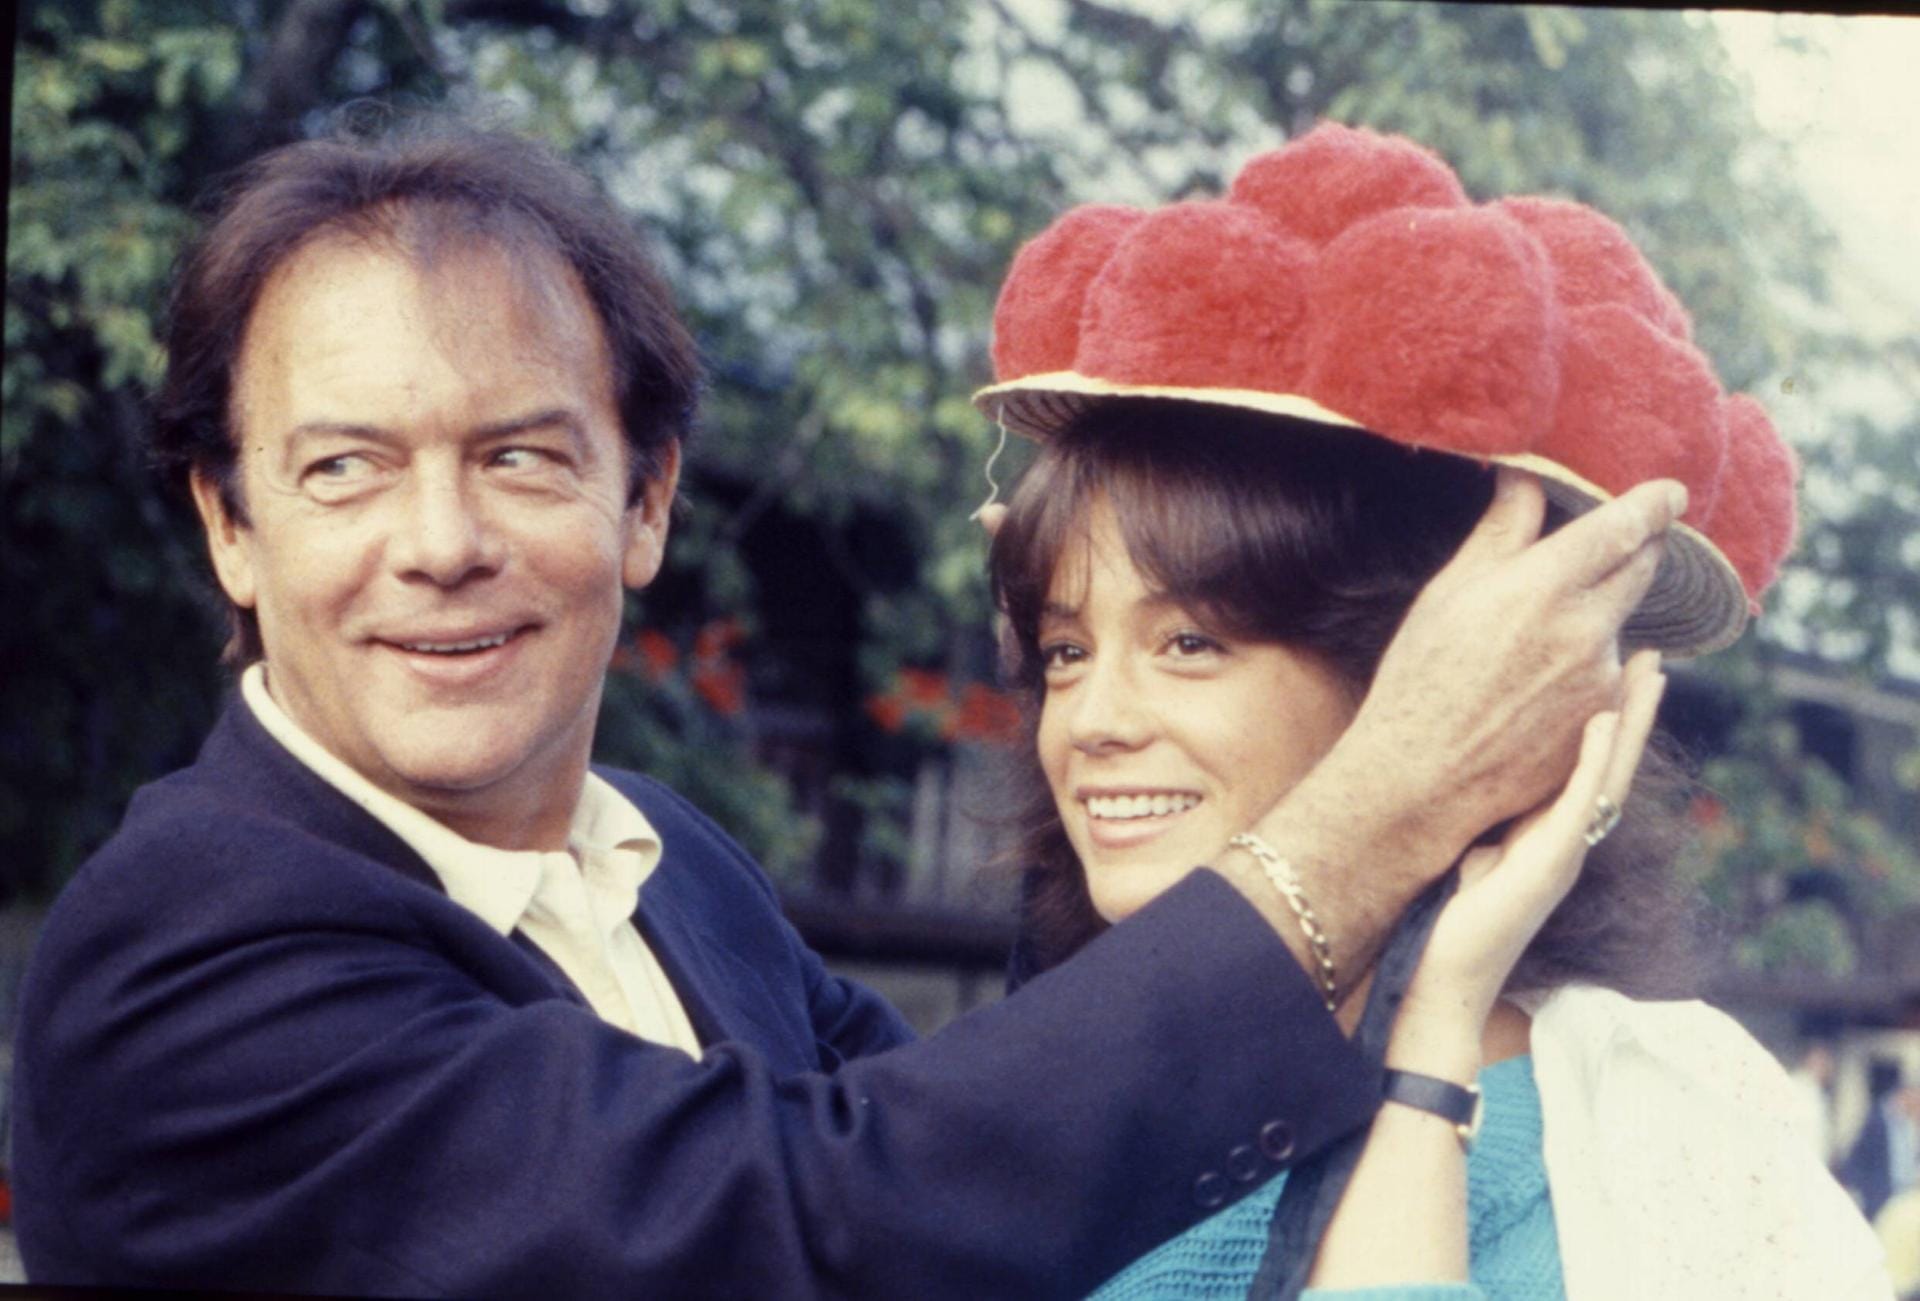 1984: Klausjürgen und Tochter Barbara Wussow am Set der "Schwarzwaldklinik".